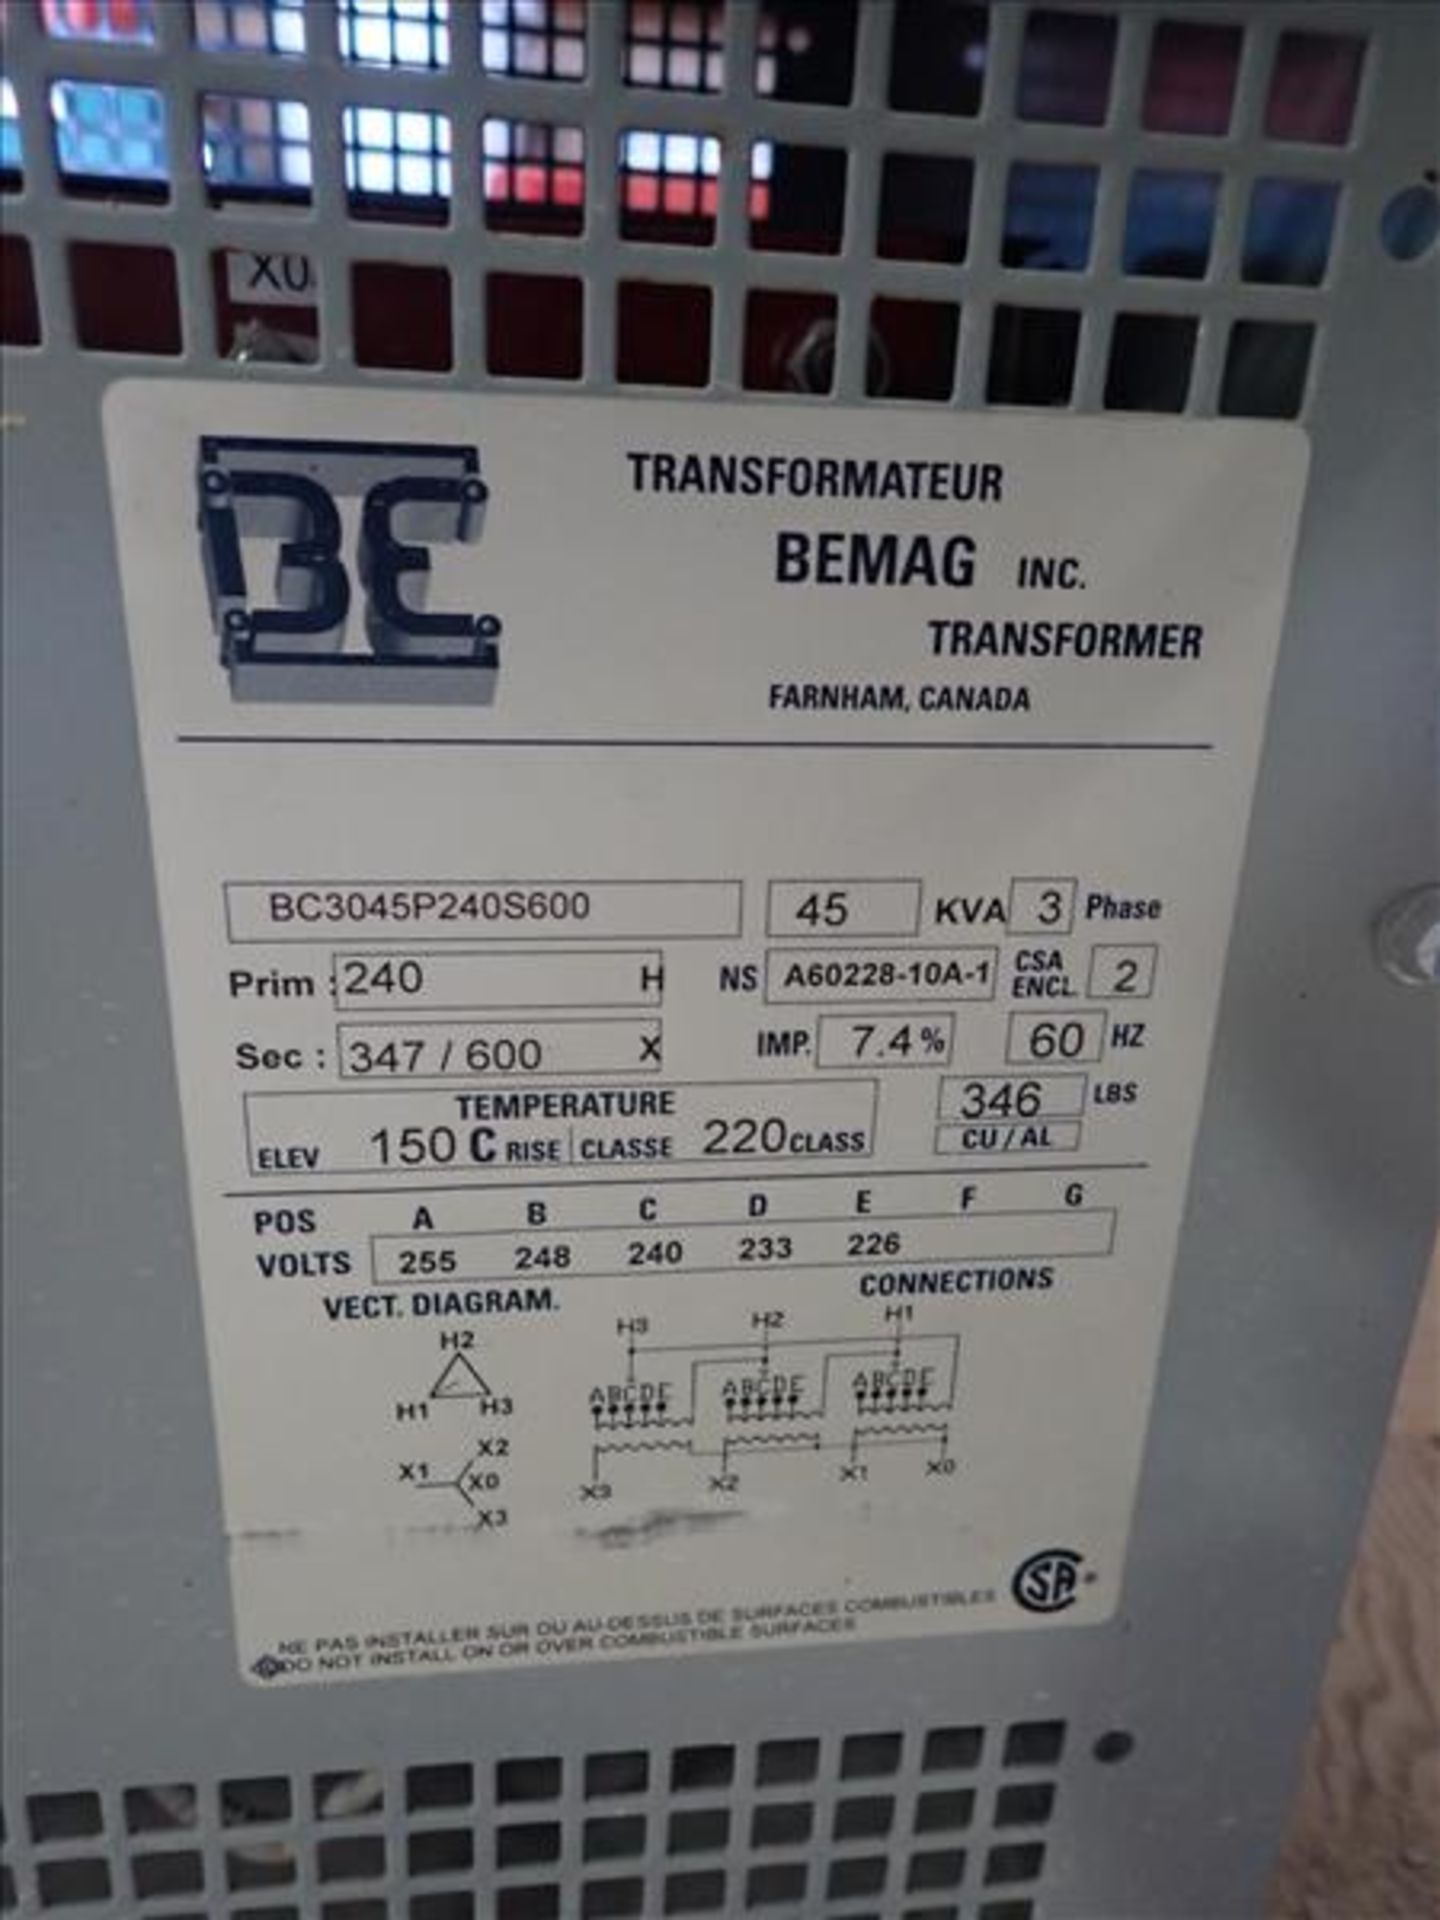 Bemag 45KVA Transformer (Tag No. 4289) [Sea Container 762887-1] {Location Hallnor} - Image 2 of 2